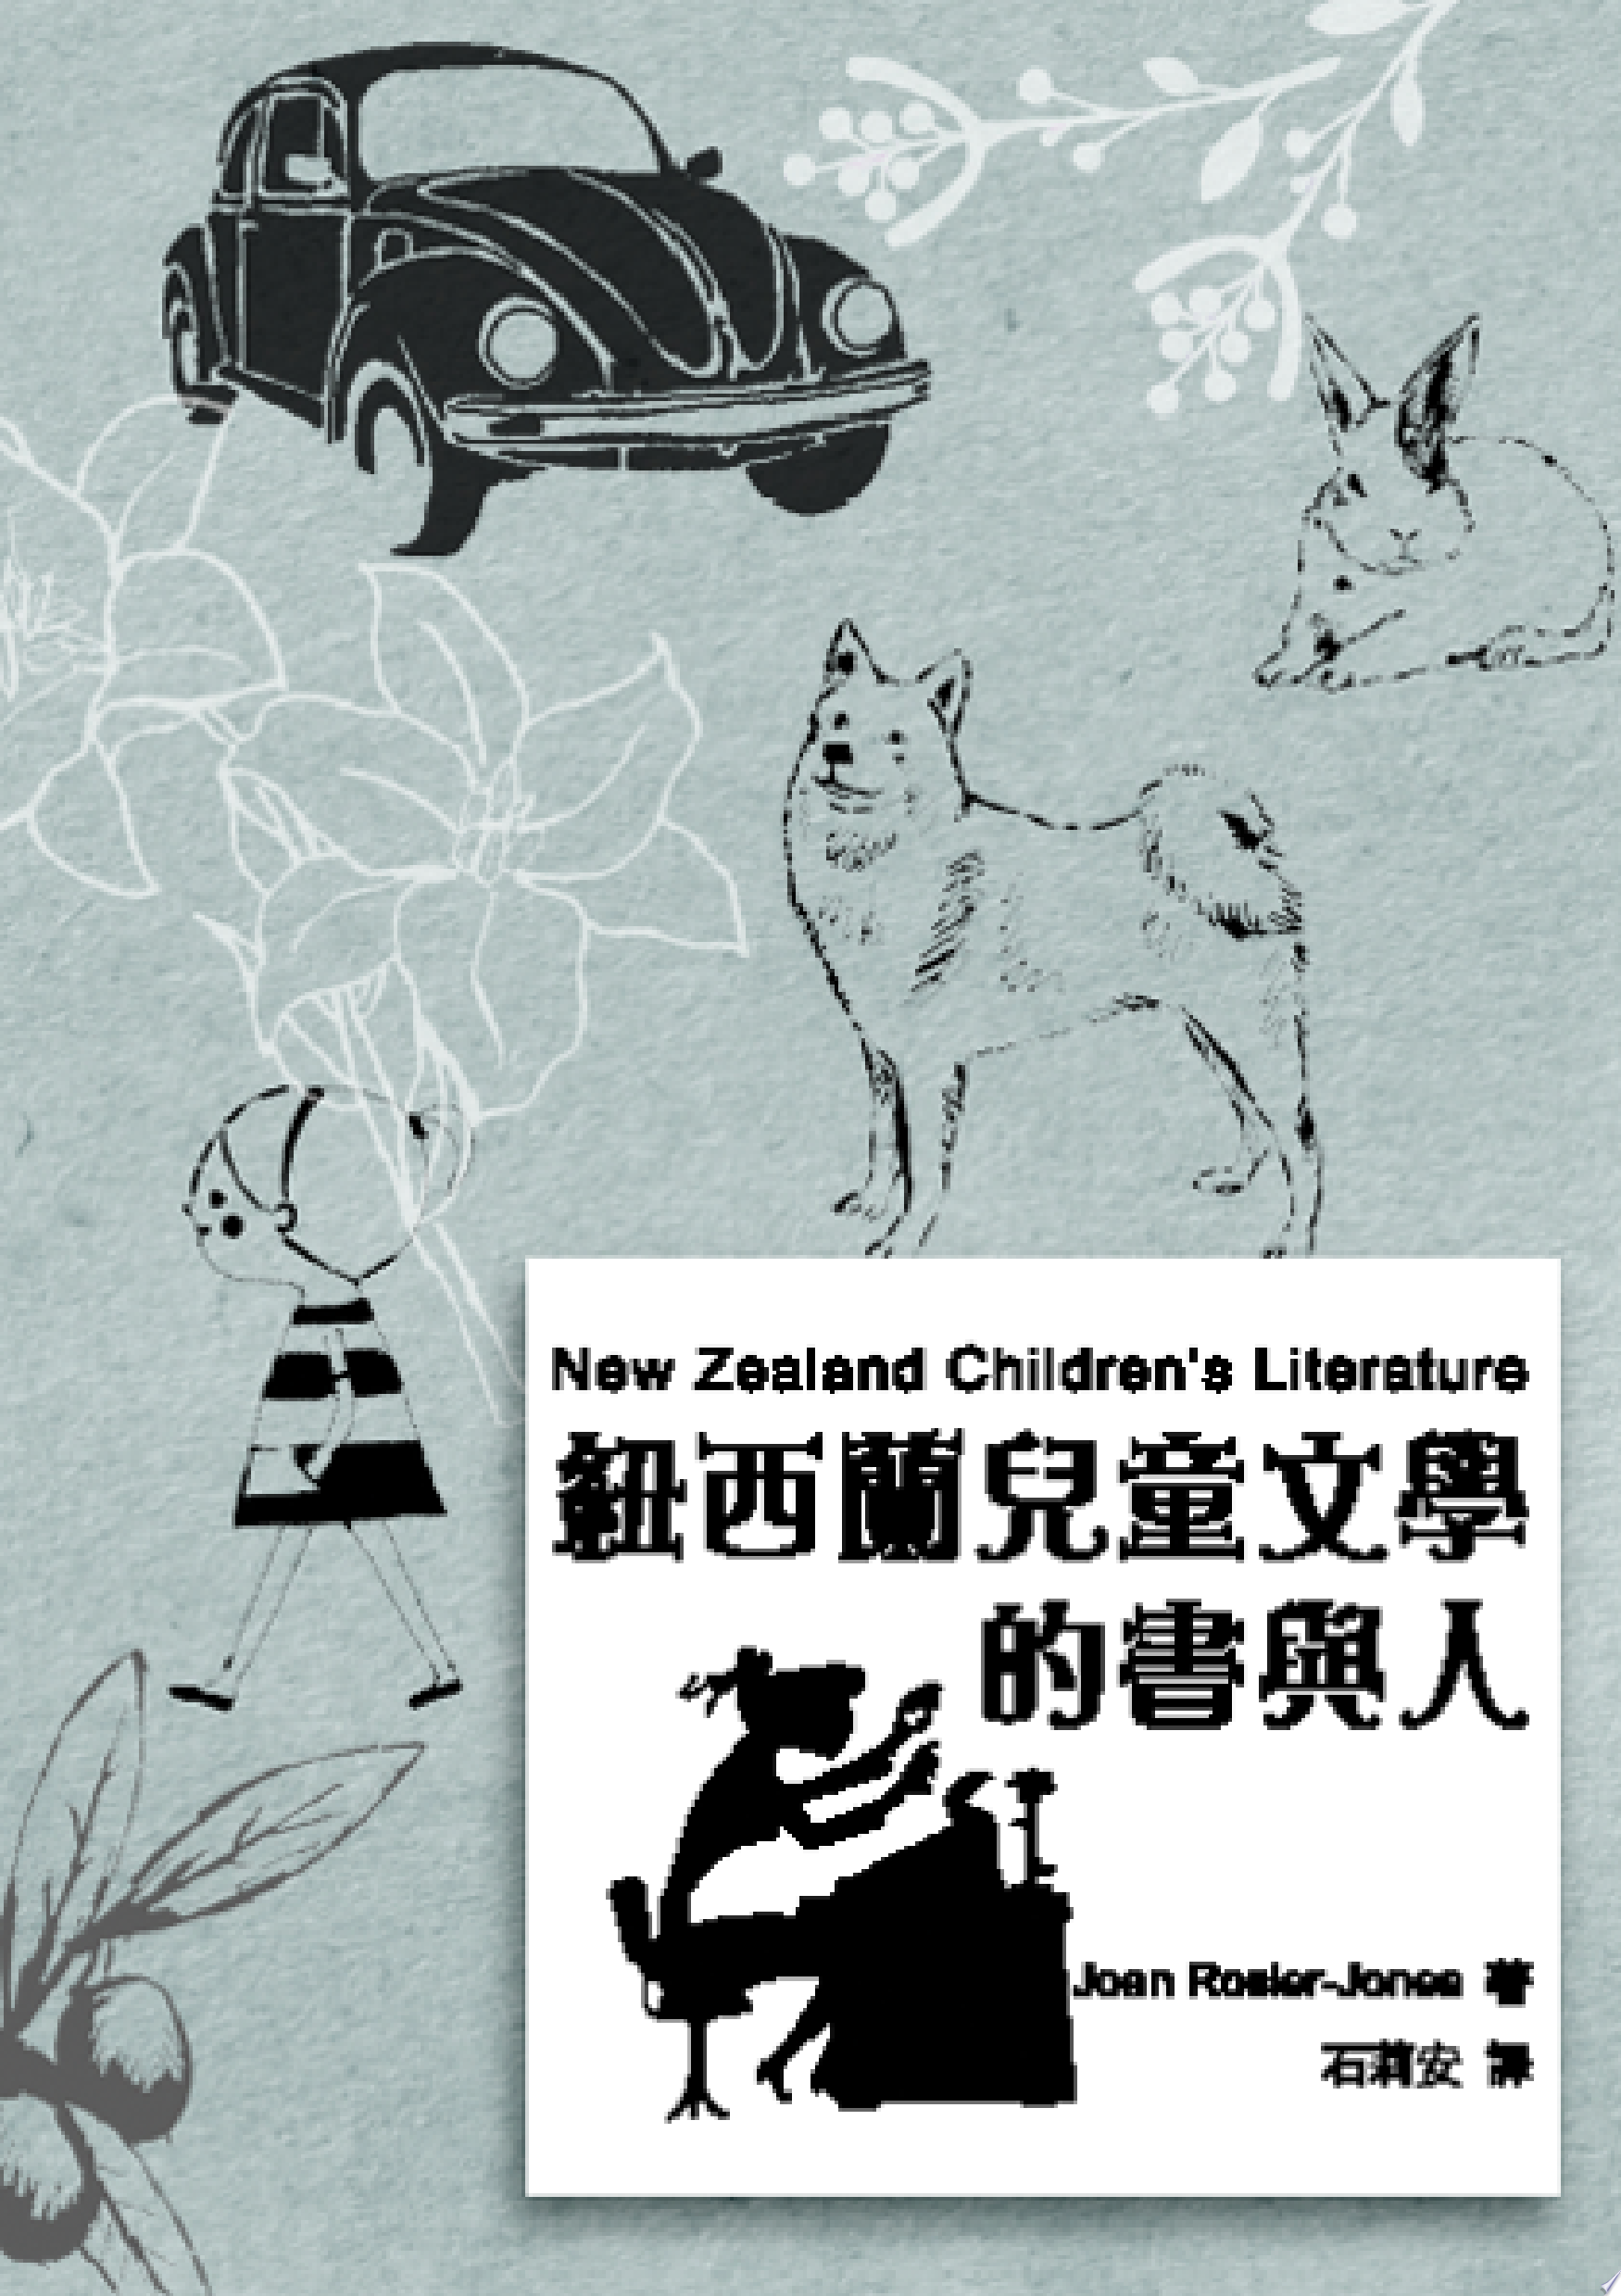 石莉安, Joan Rosier-Jones: 紐西蘭兒童文學的書與人 (2000)